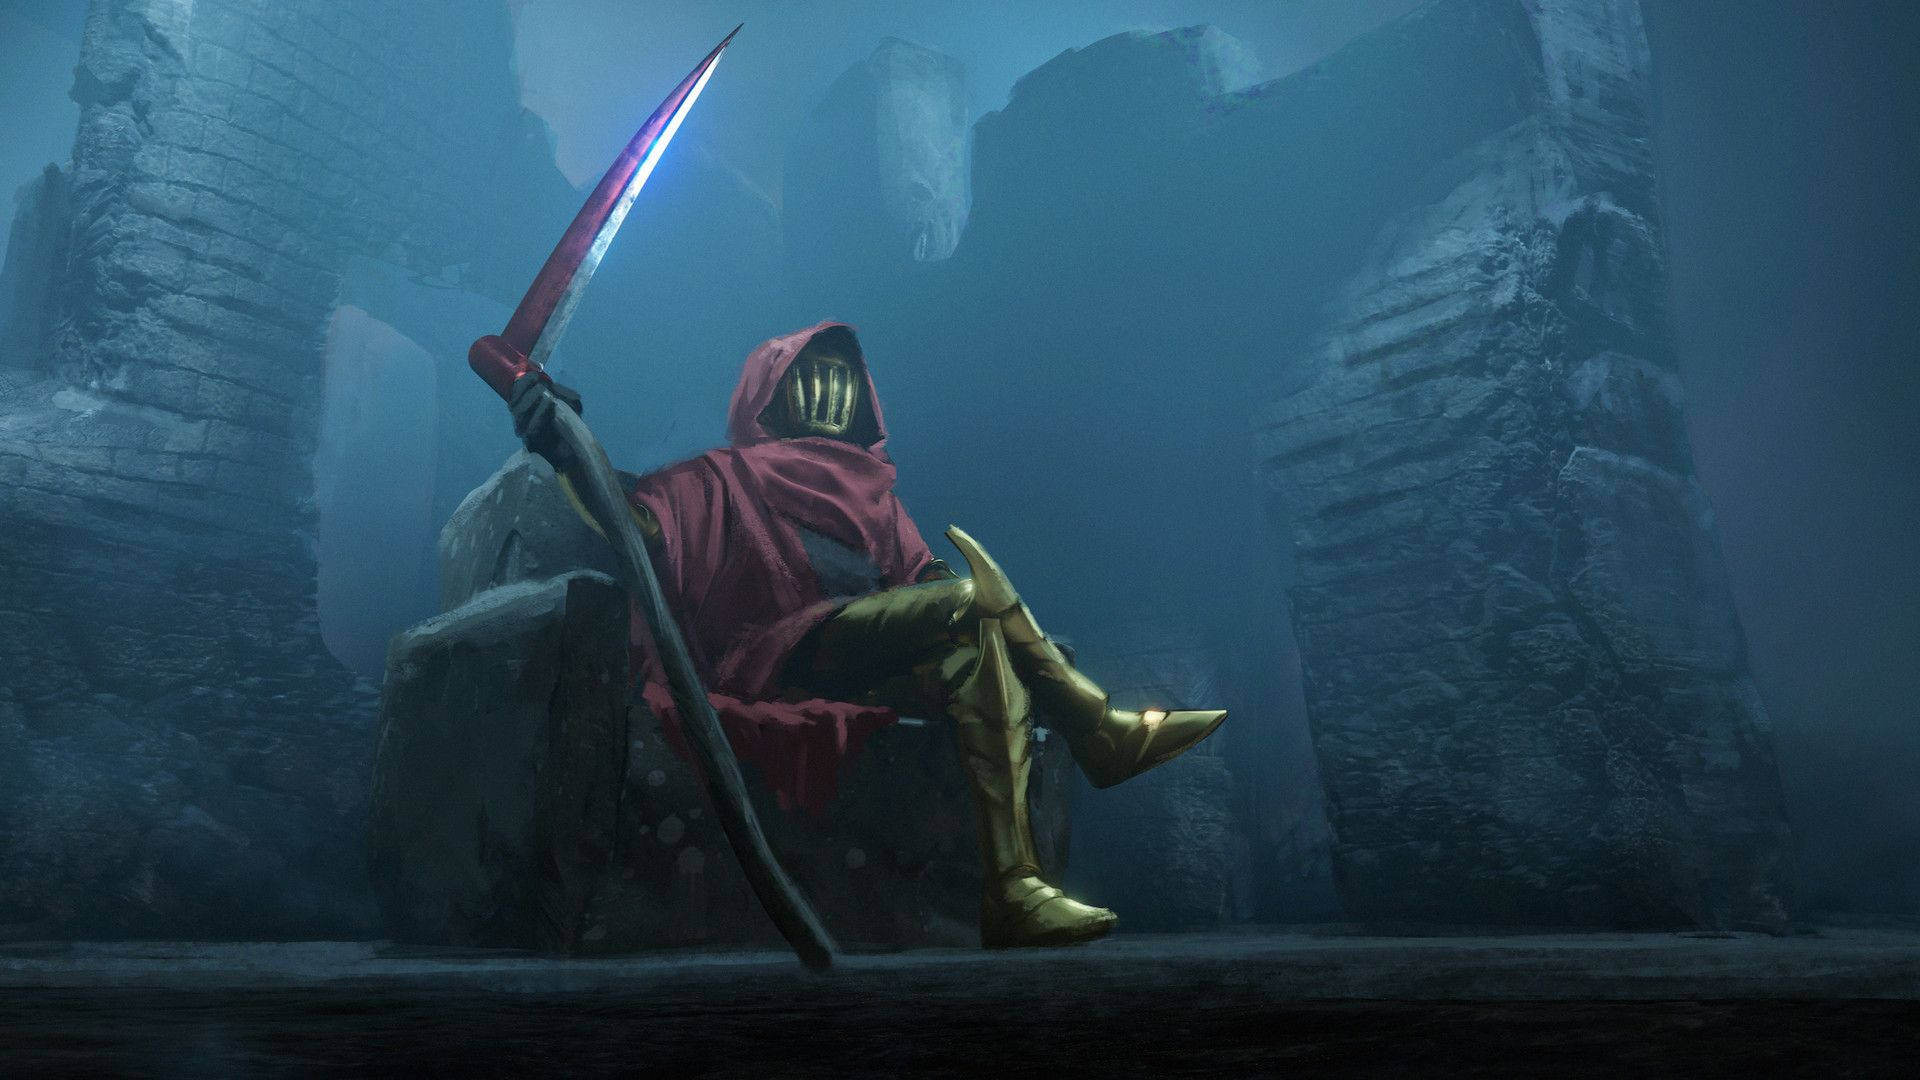 Shovel Knight Specter Knight On Throne Wallpaper